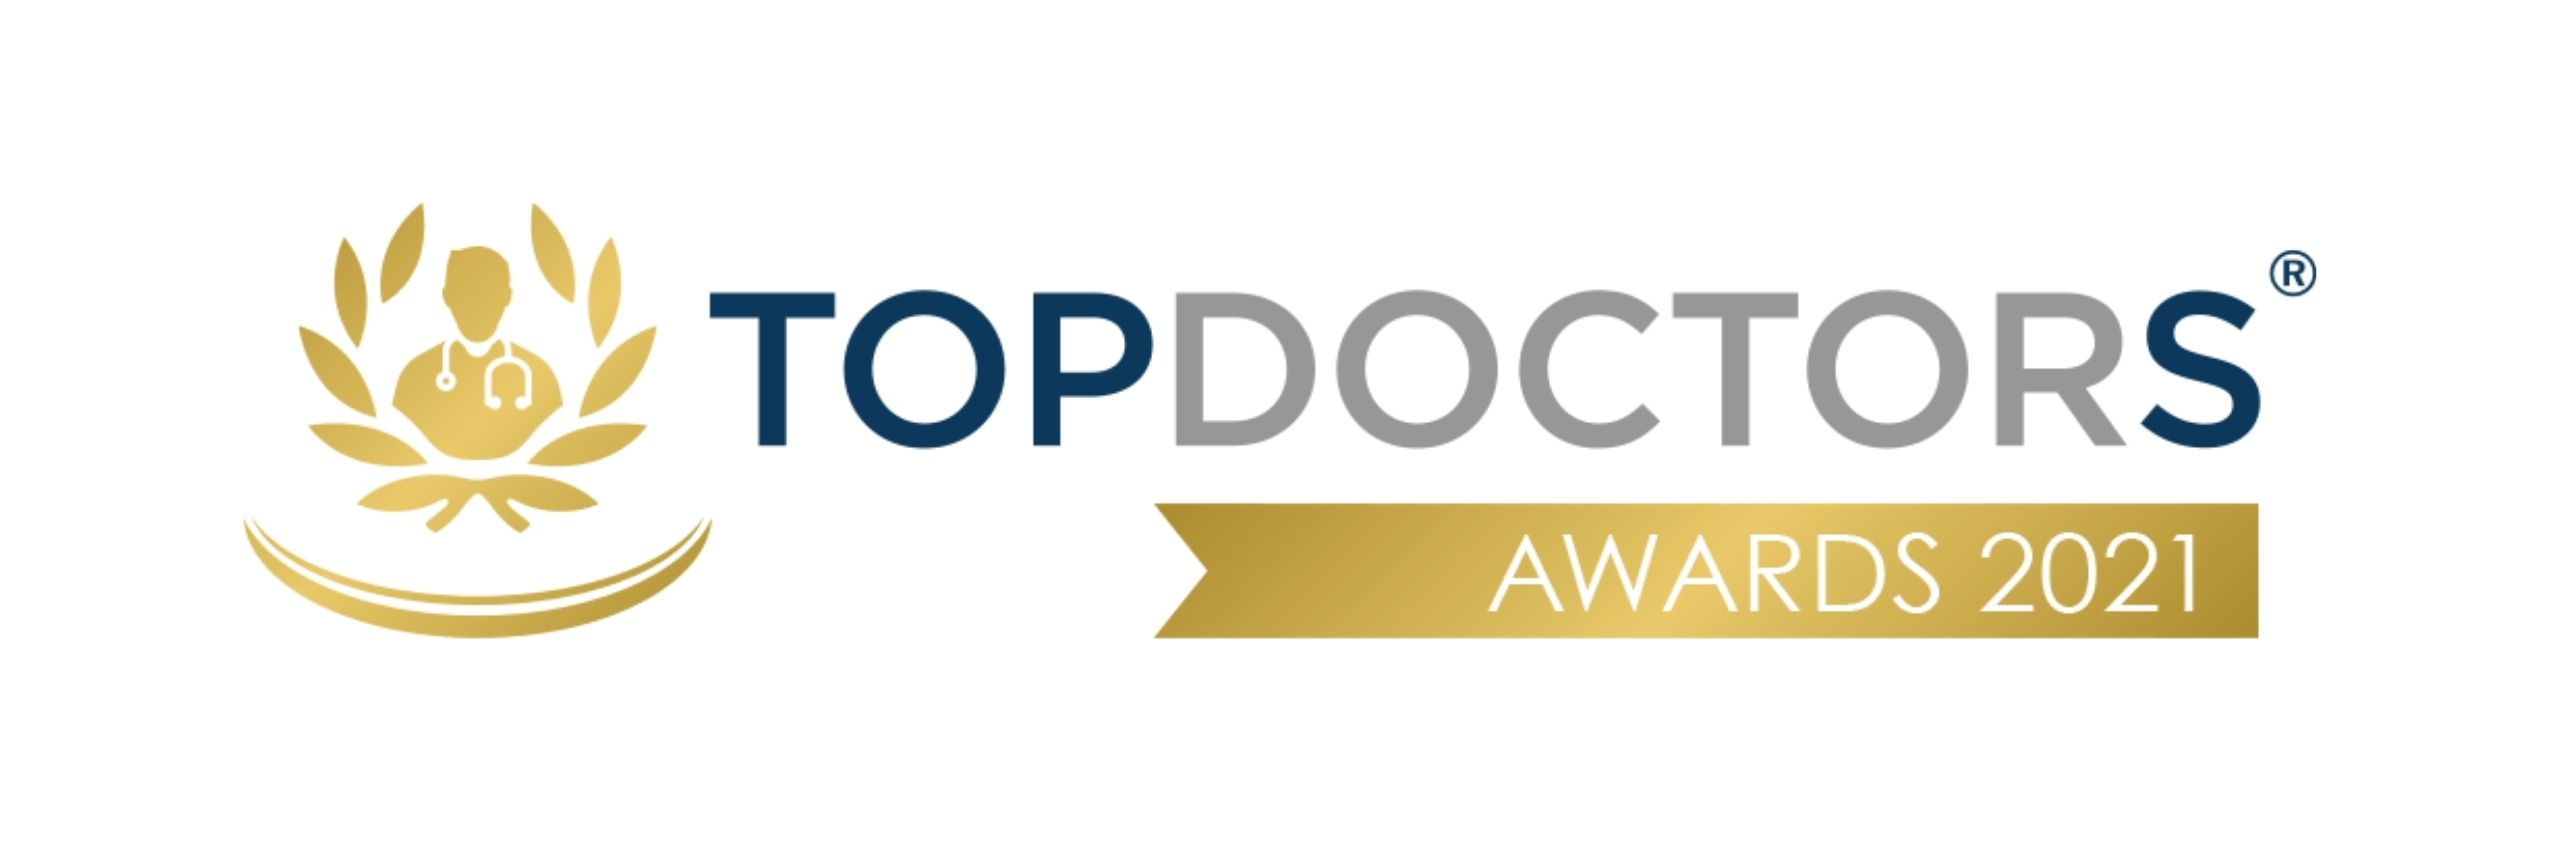 Traumatólogo Deportivo en Alicante - Top Doctor Awards 2021 | KLINIK PM